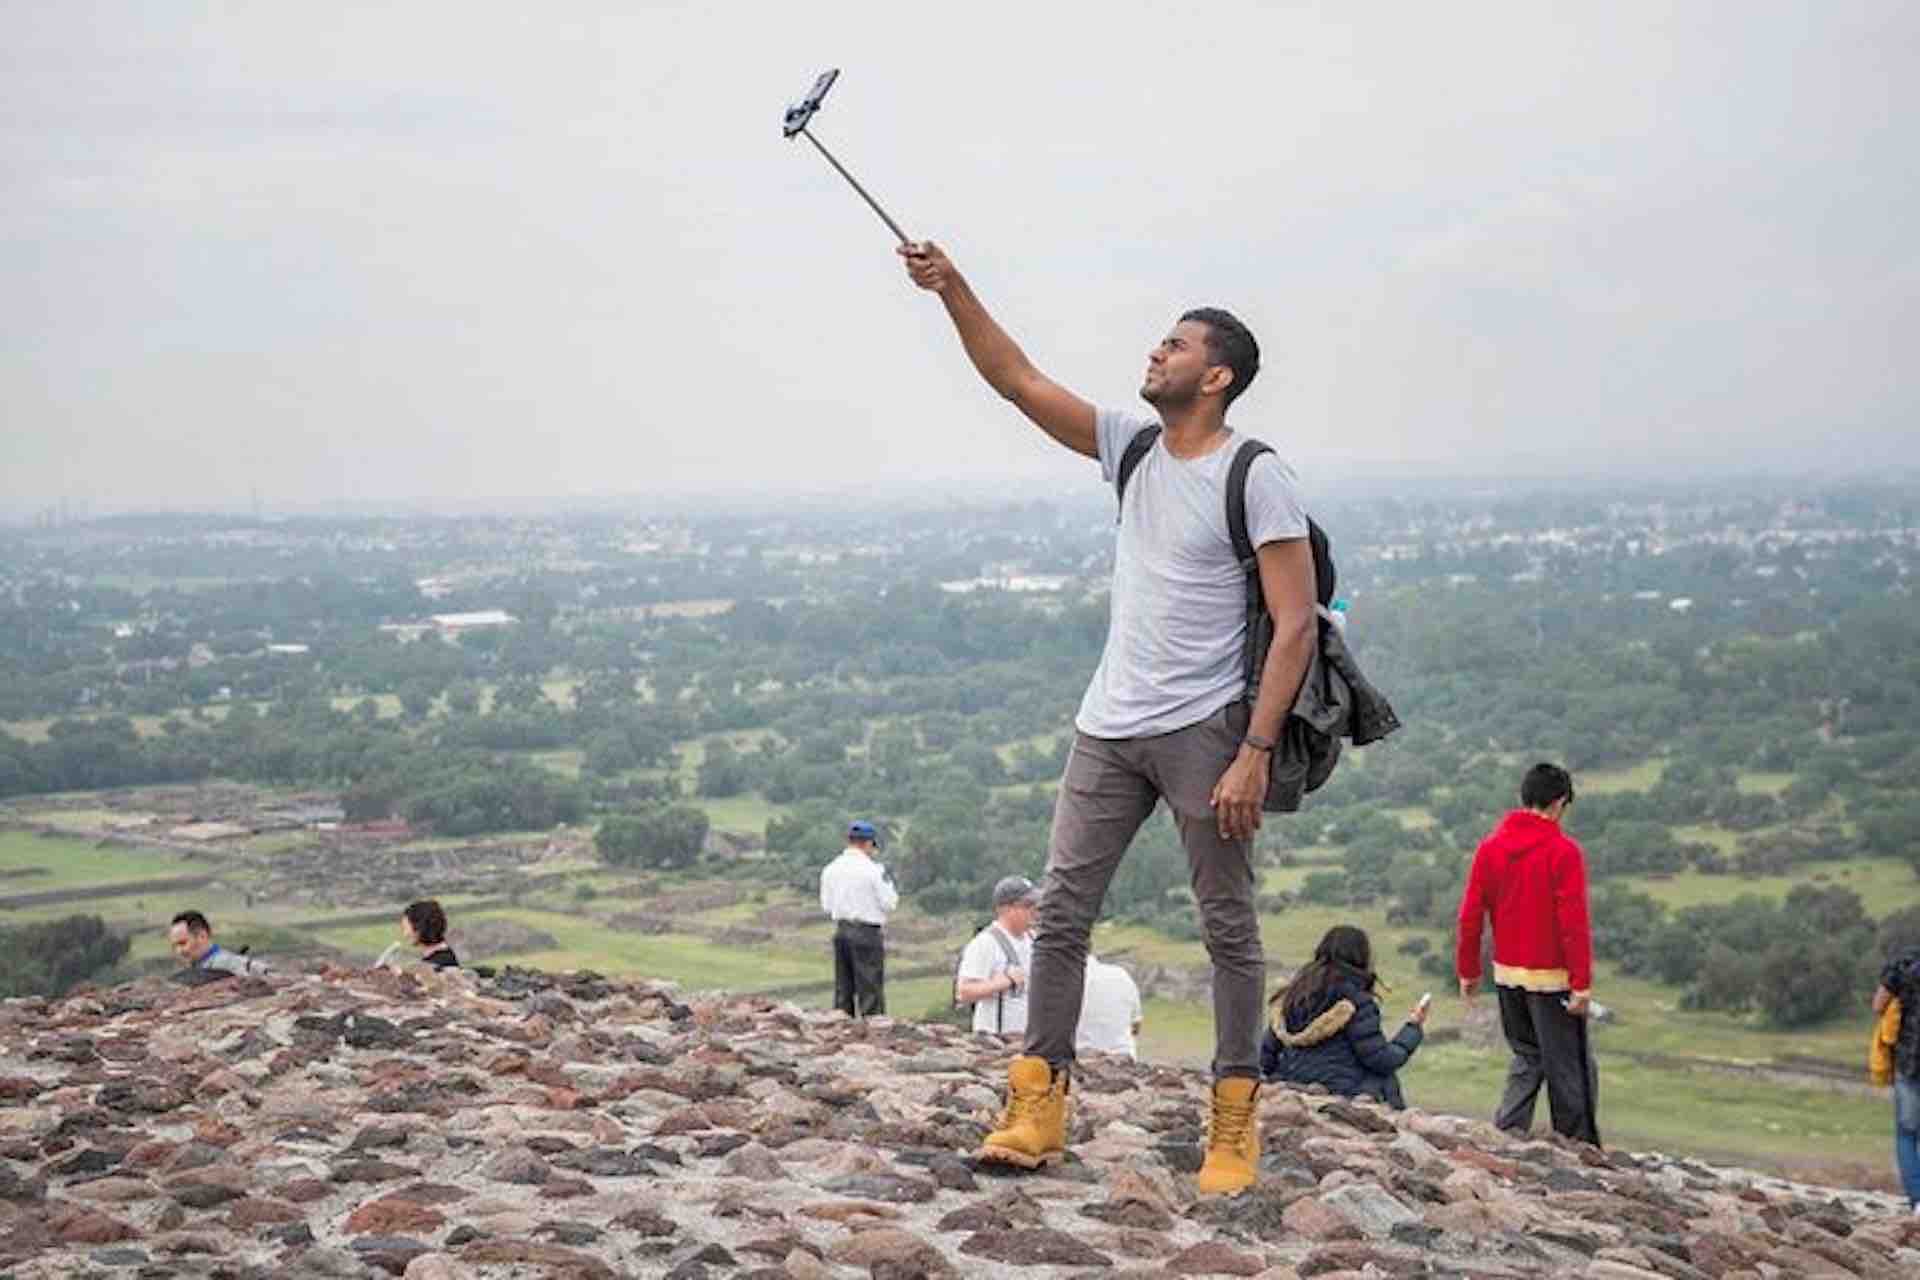 Visitante de las pirámides de Teotihuacán se toma una selfie en la cima de la pirámide durante el recorrido